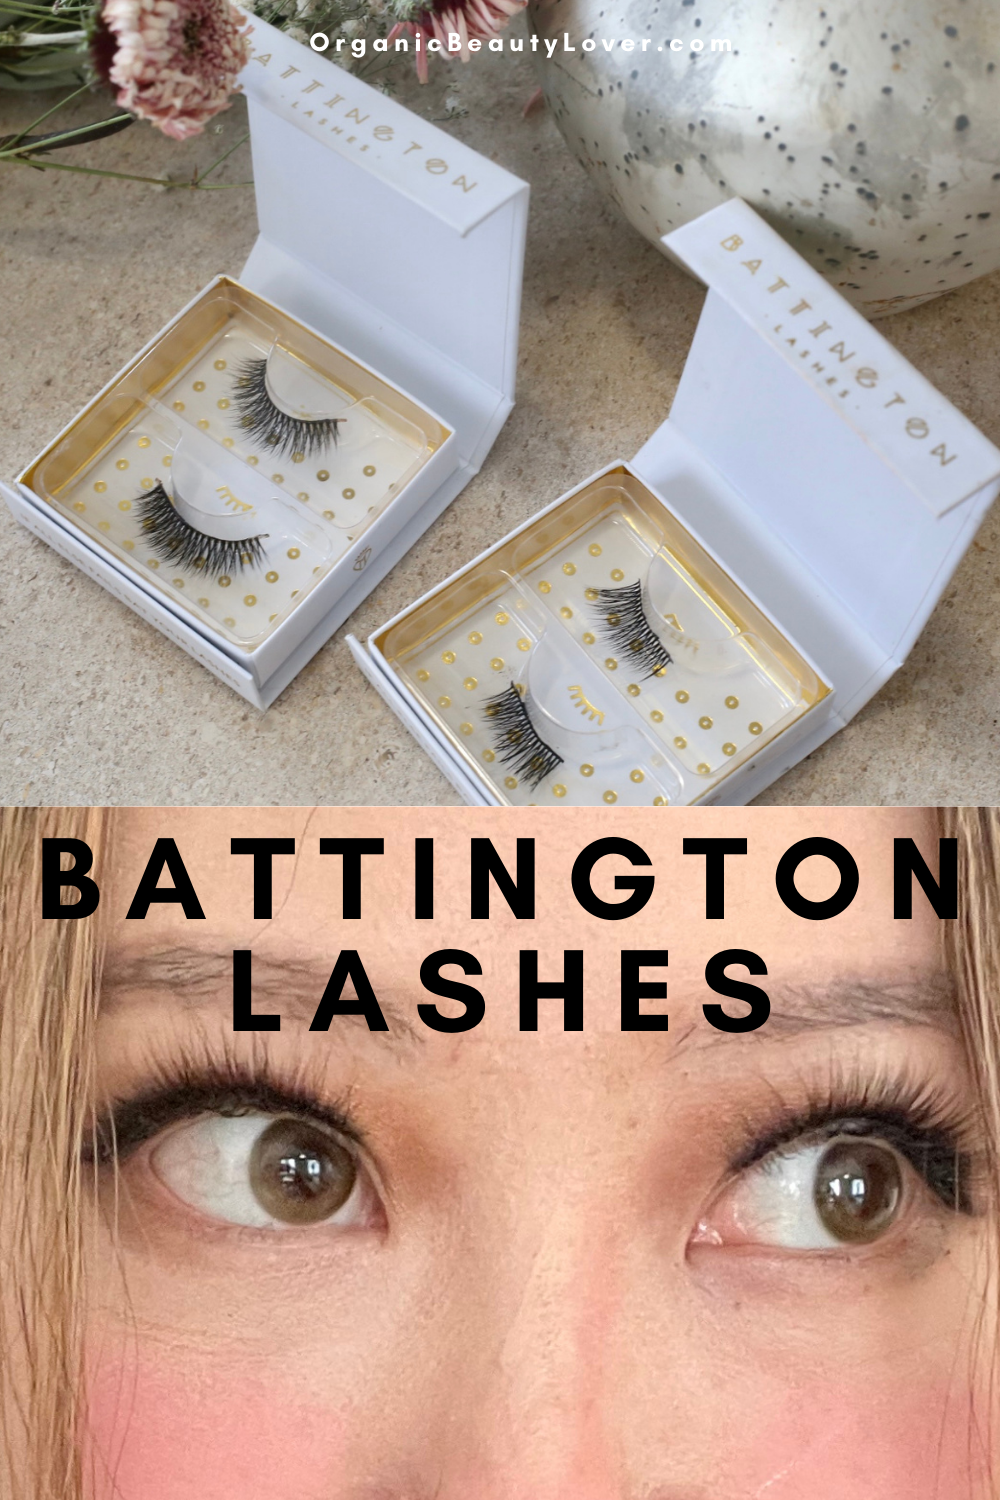 Battington Lashes Review